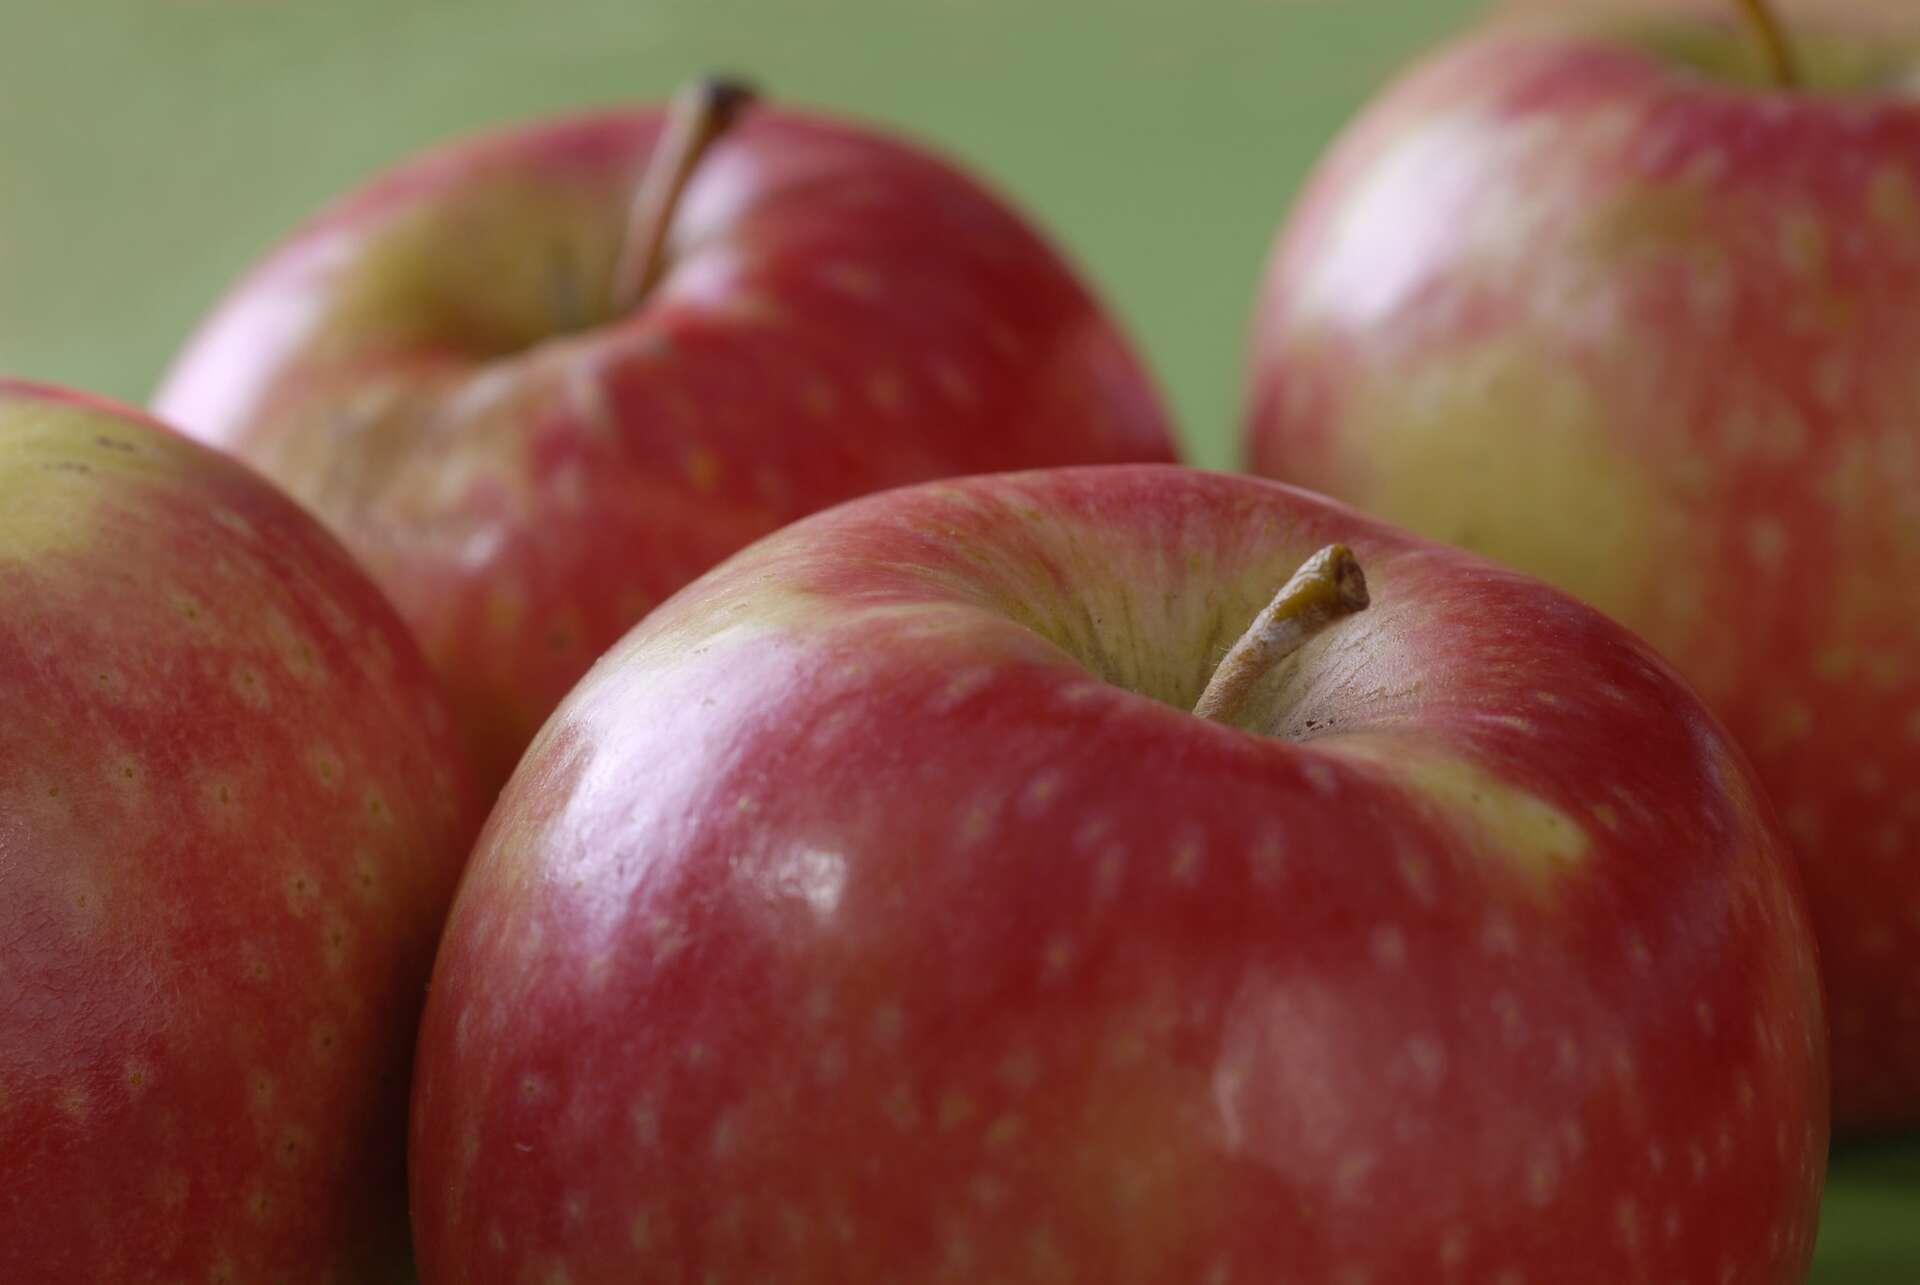 Les pommes ont des millions de bactéries, bio ou pas - Sciences et Avenir